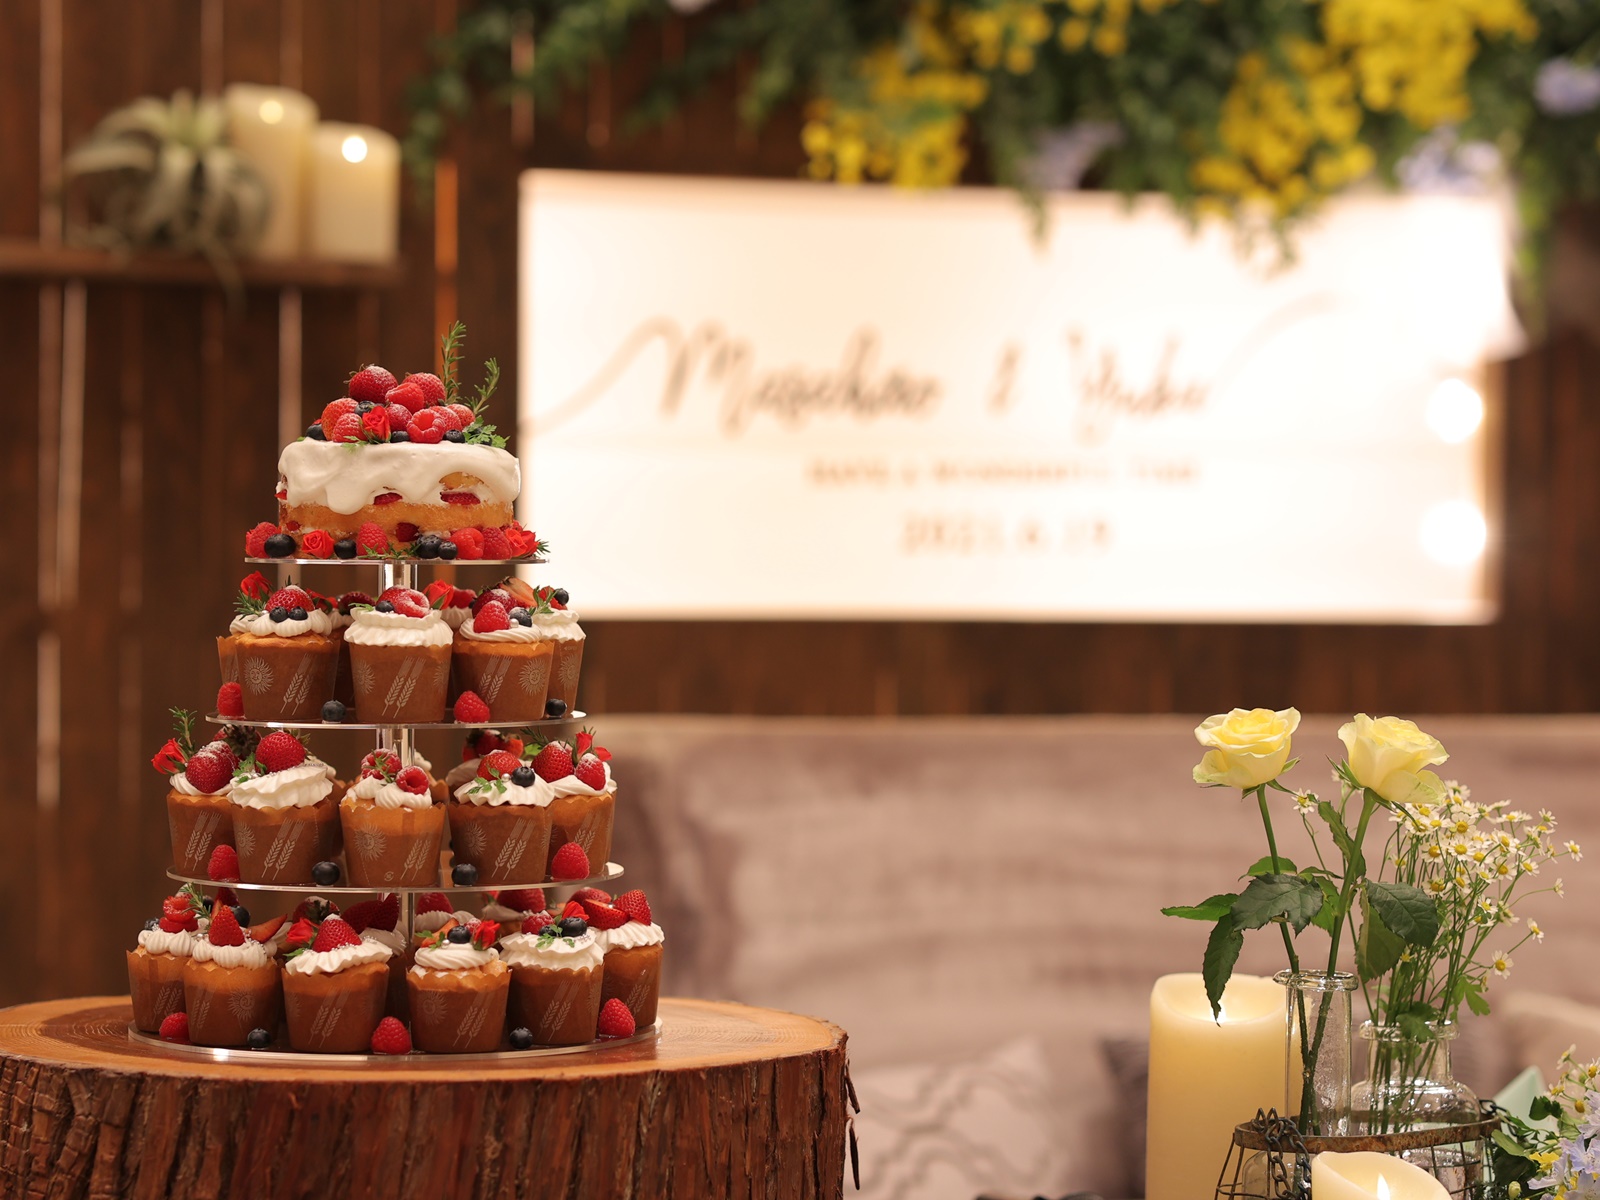 カップケーキで作るオリジナルウェディングケーキ ニュース ブログ 滋賀 近江八幡の結婚式場 公式 ヴィラ アンジェリカ